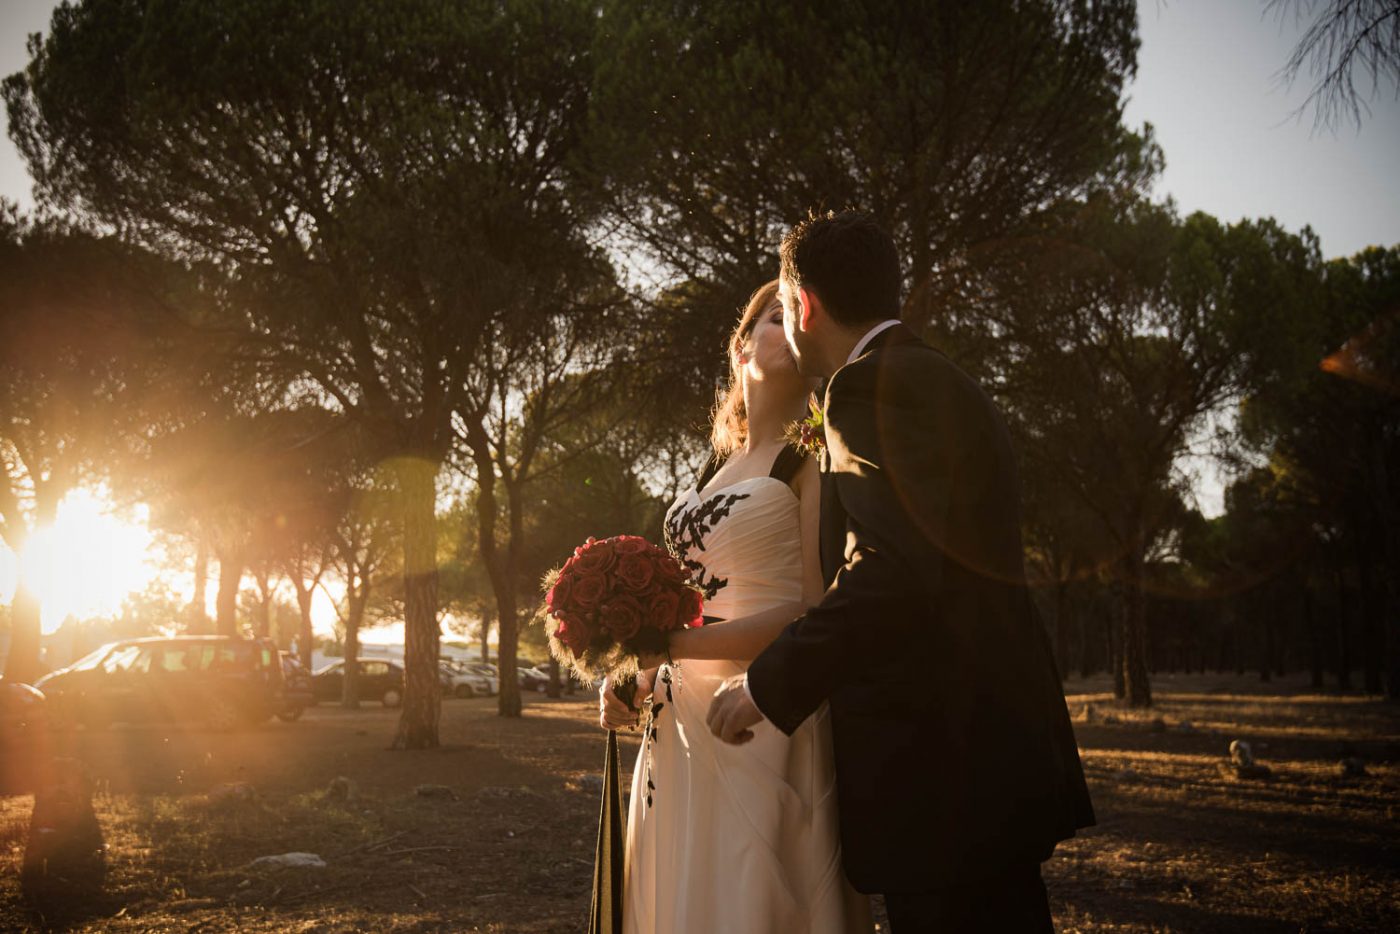 Descubre cómo Beatriz y José Javier celebraron su amor en Valladolid con la ayuda de MUEKA, capturando cada momento especial con fotografía, video y fotomatón. ¡Contáctanos para hacer que tu boda sea inolvidable!